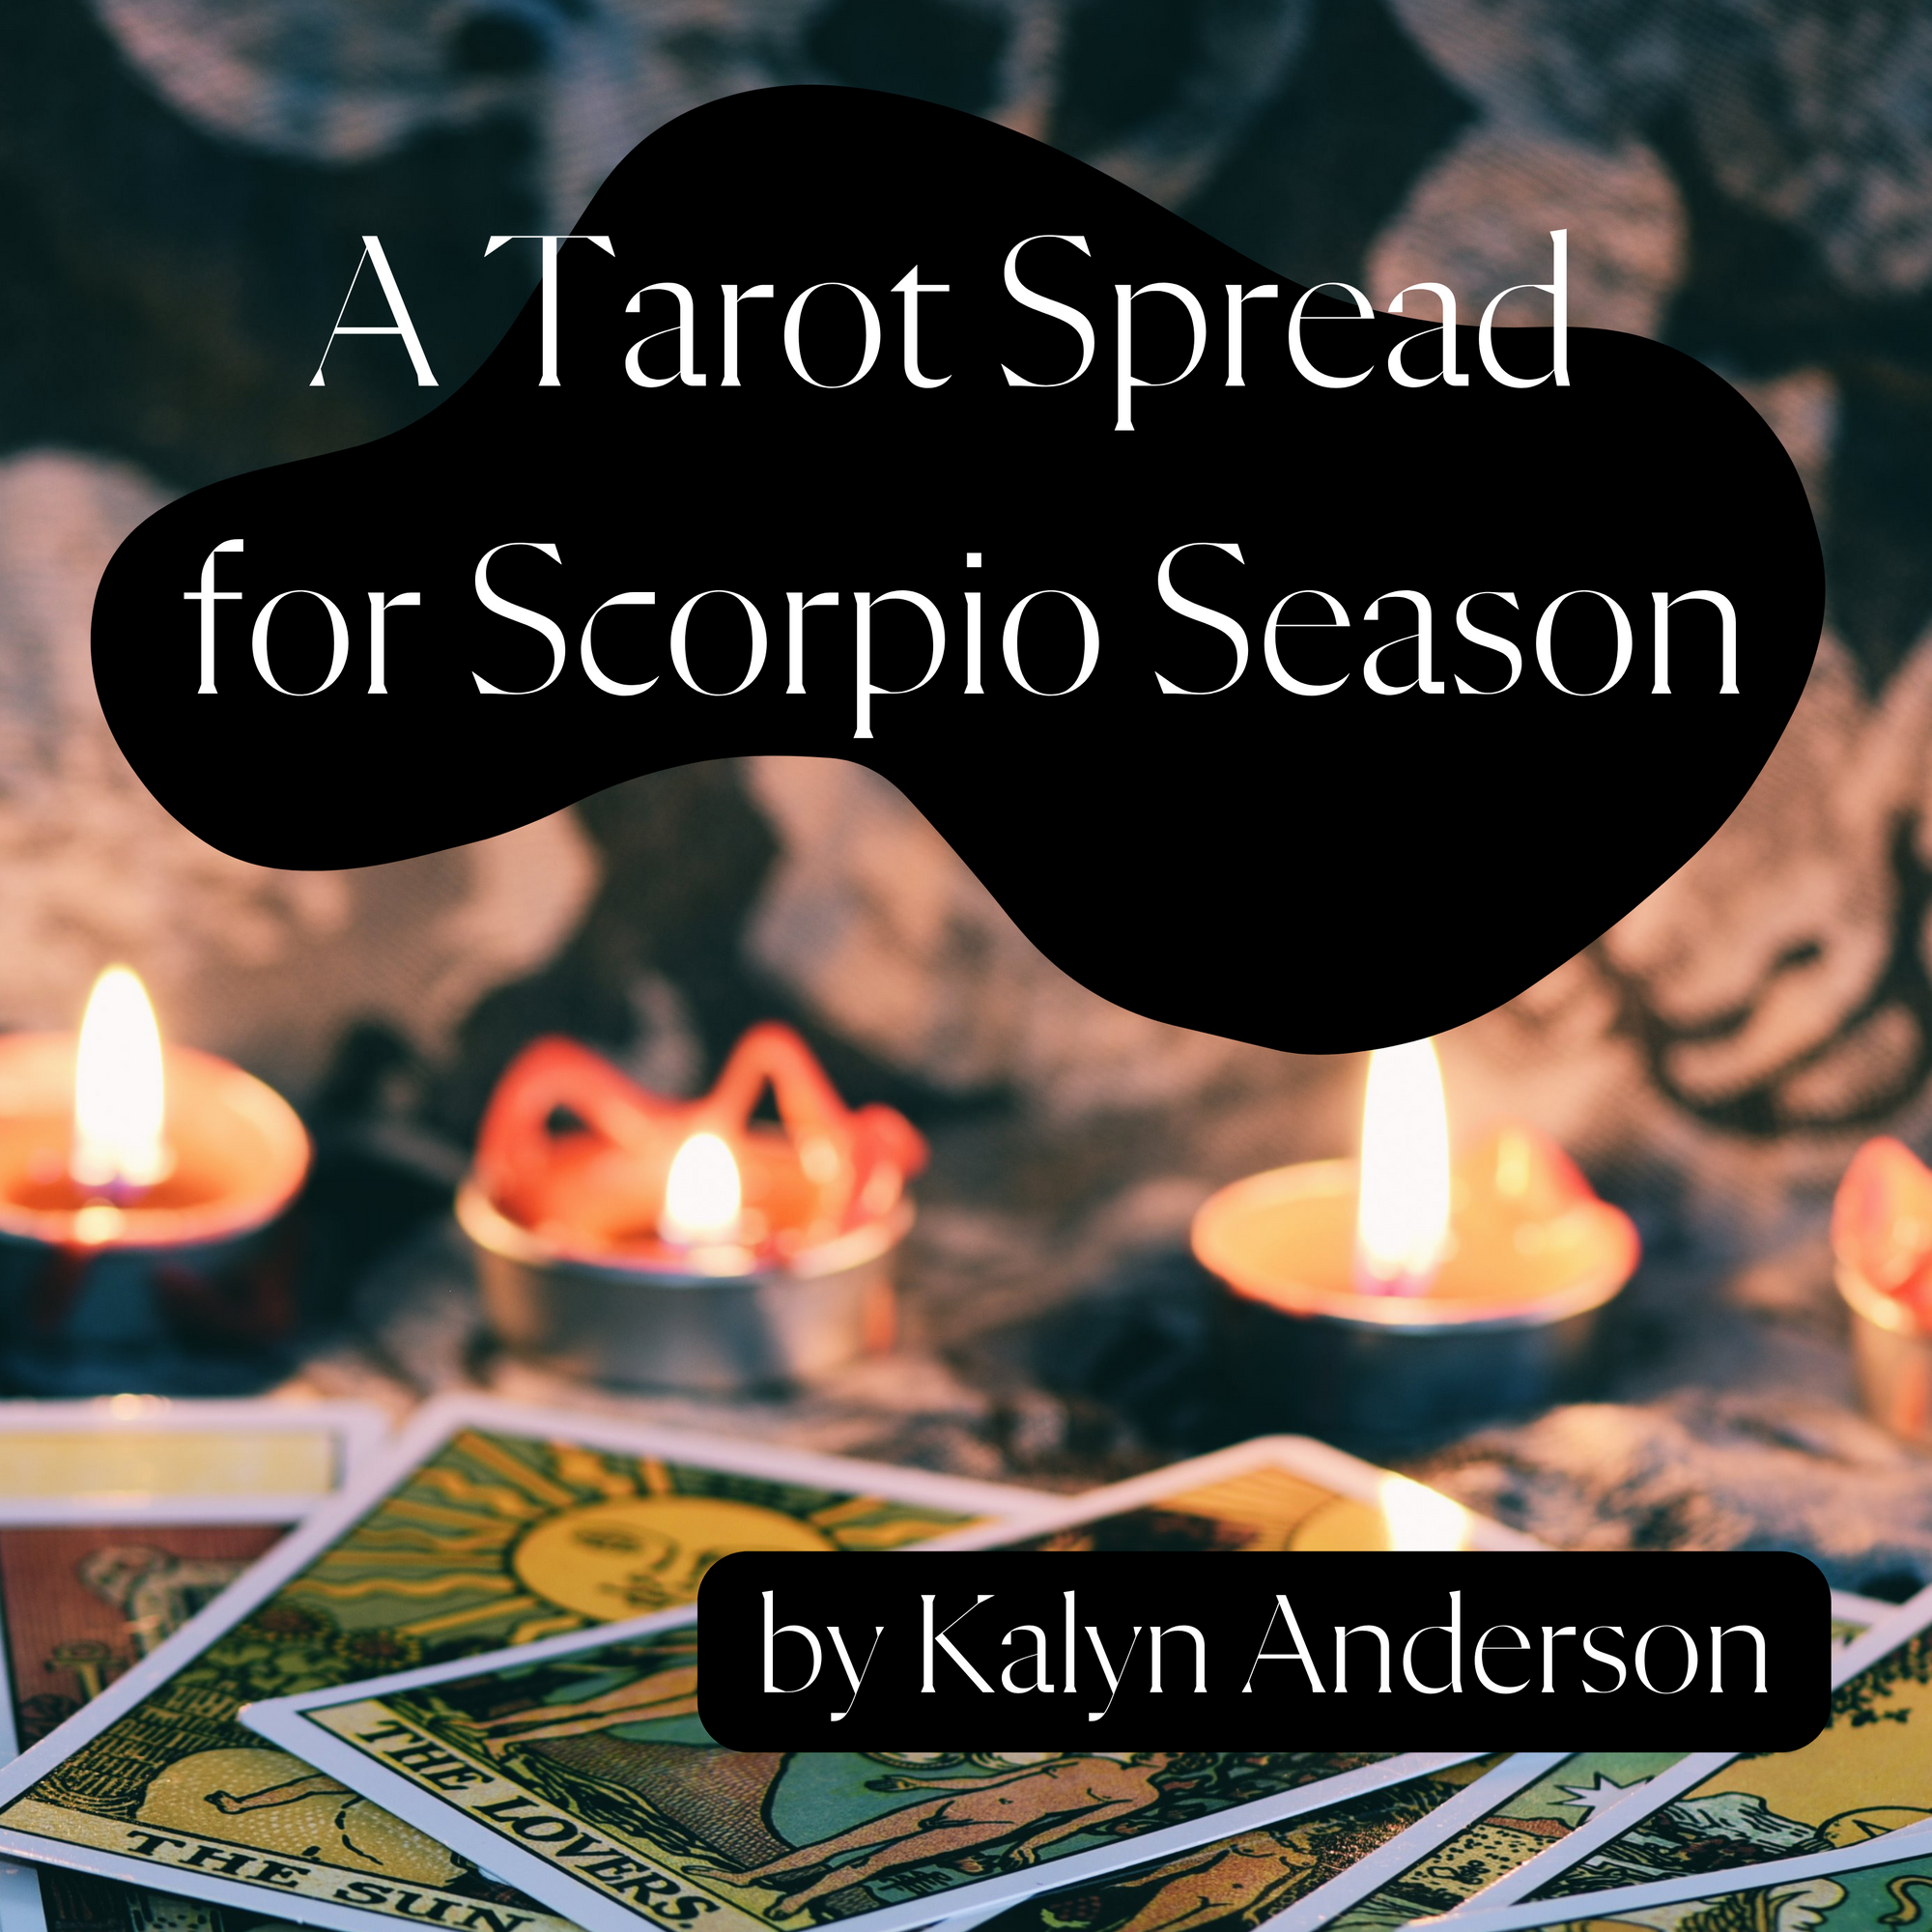 A Tarot Spread for Scorpio Season